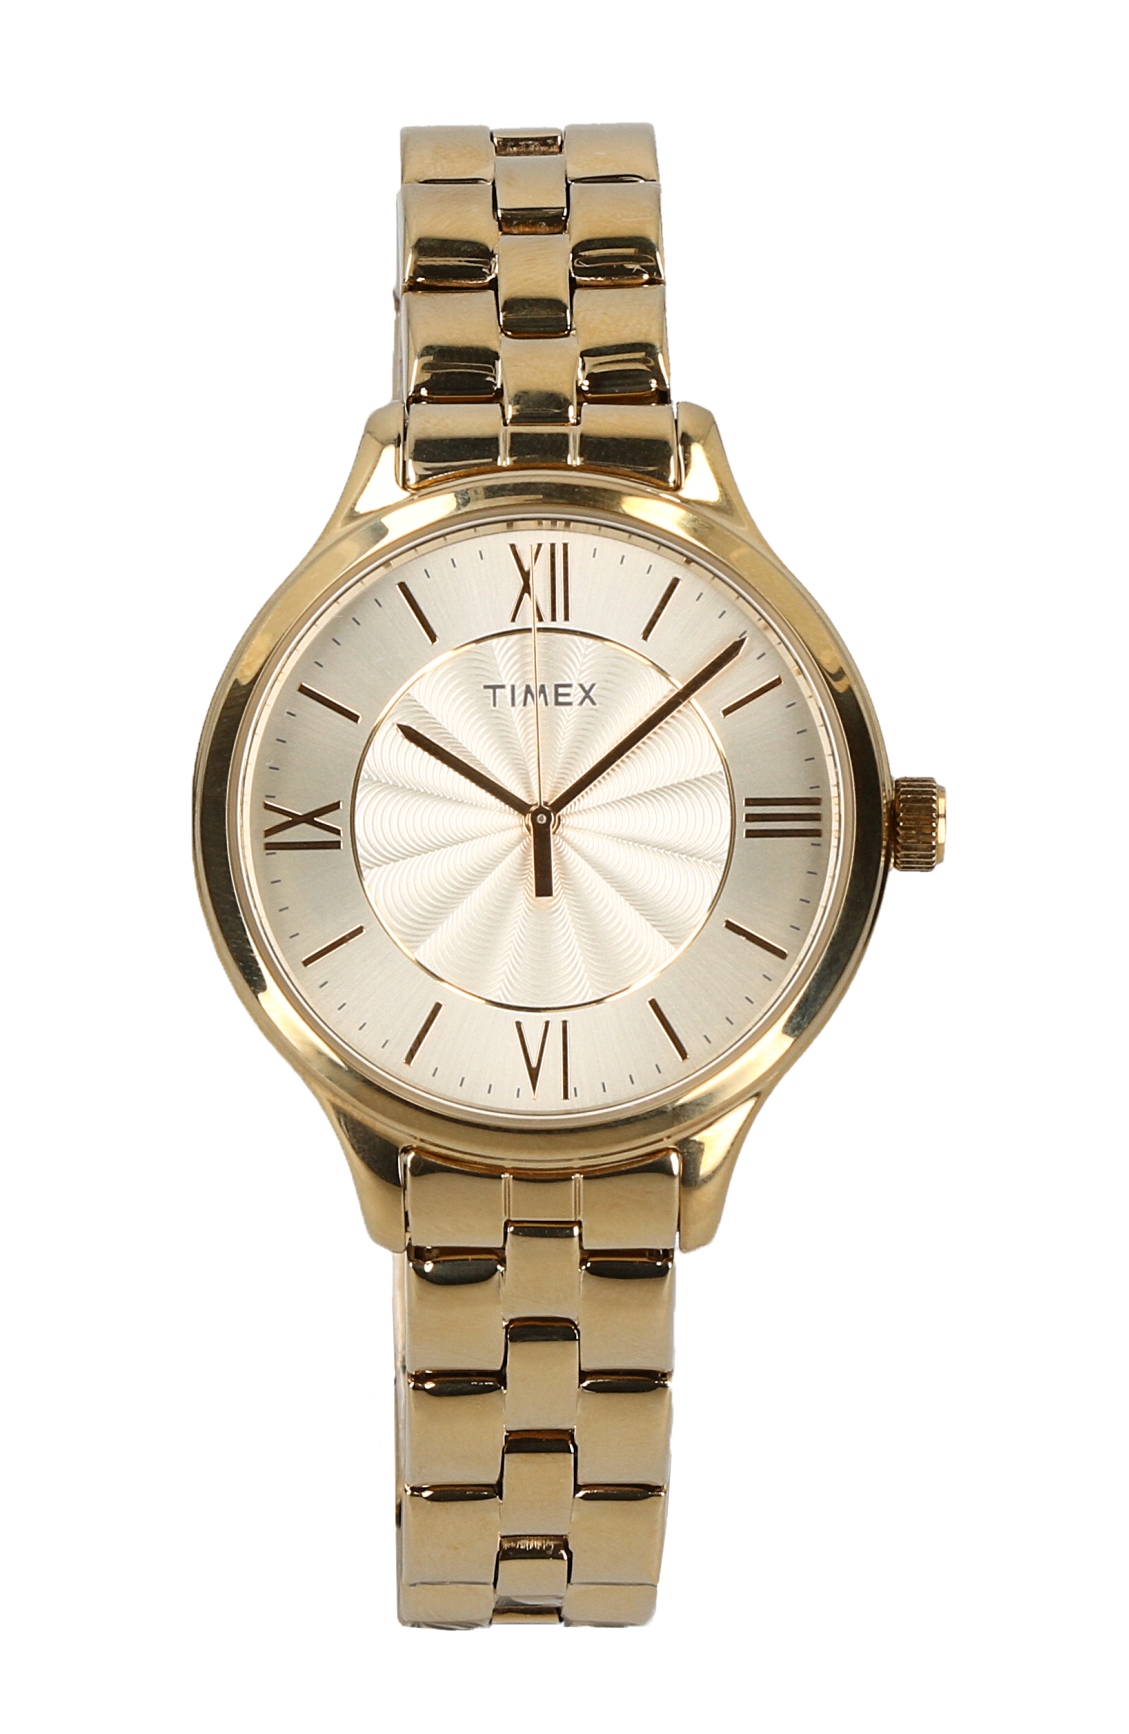 Promocja Zegarek damski bransoleta złoty timex TW2R28100 wyprzedaż przecena